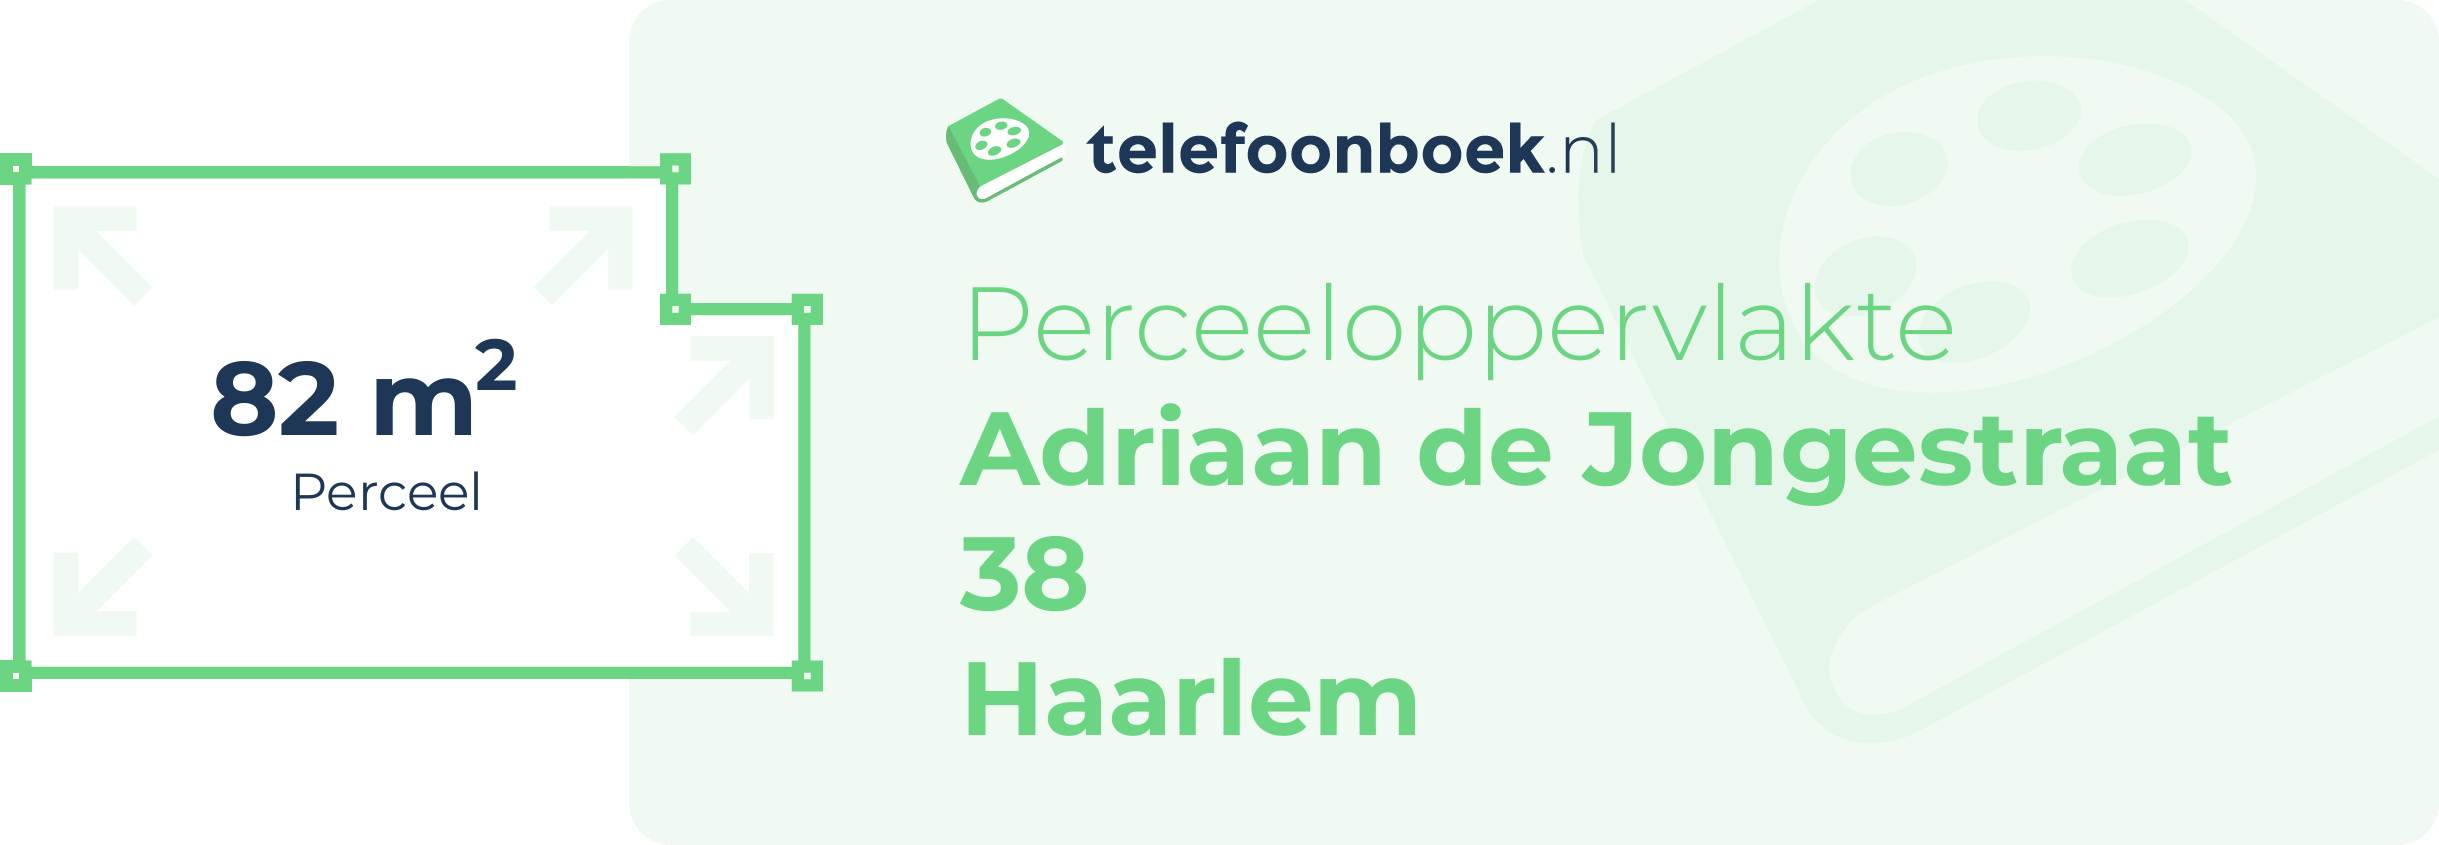 Perceeloppervlakte Adriaan De Jongestraat 38 Haarlem